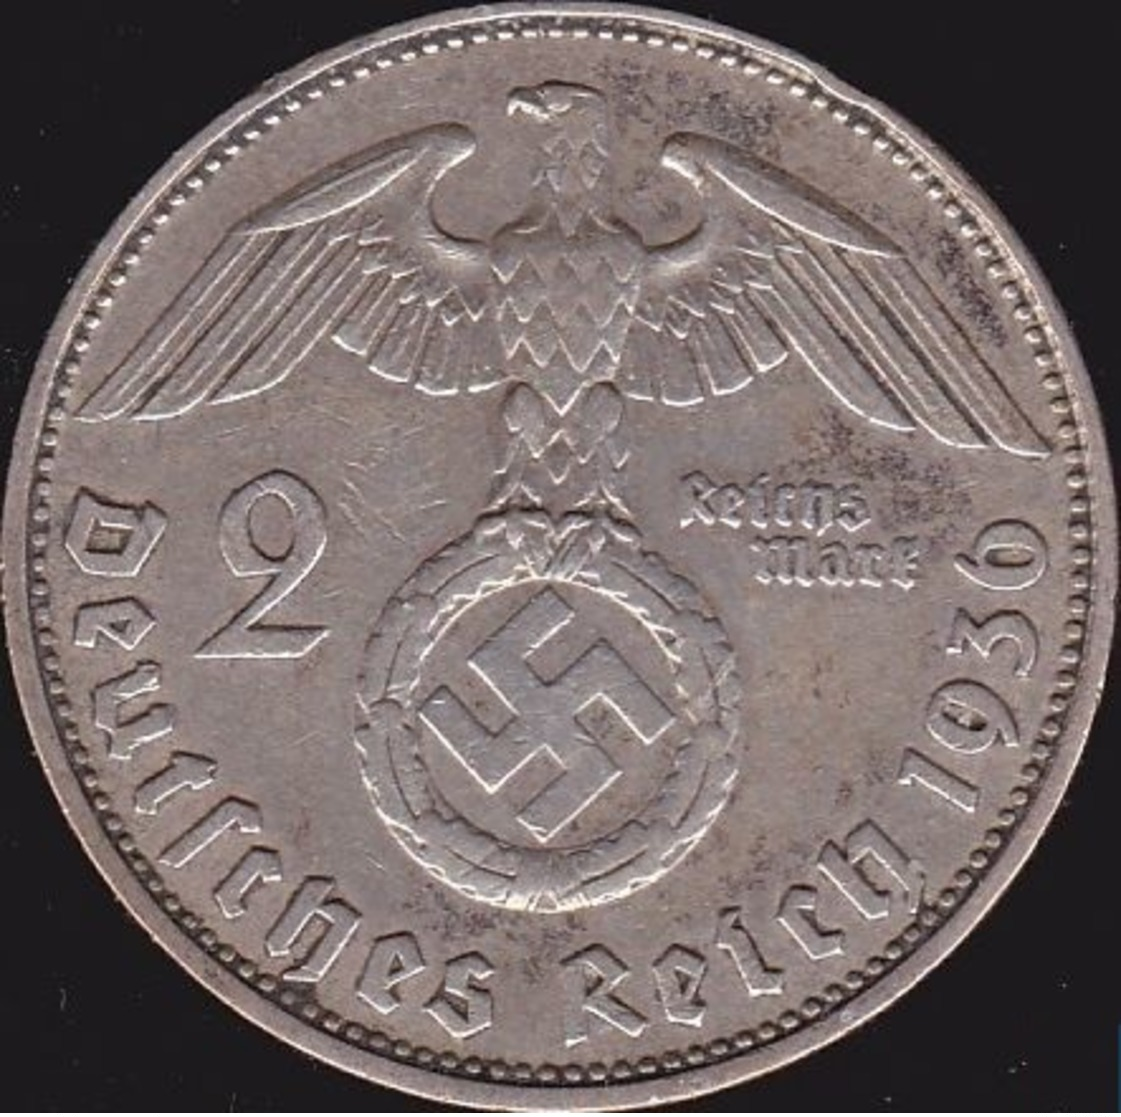 Allemange, Troisième Reich 2 Reichsmark 1936 D - Argent /silver - 2 Reichsmark